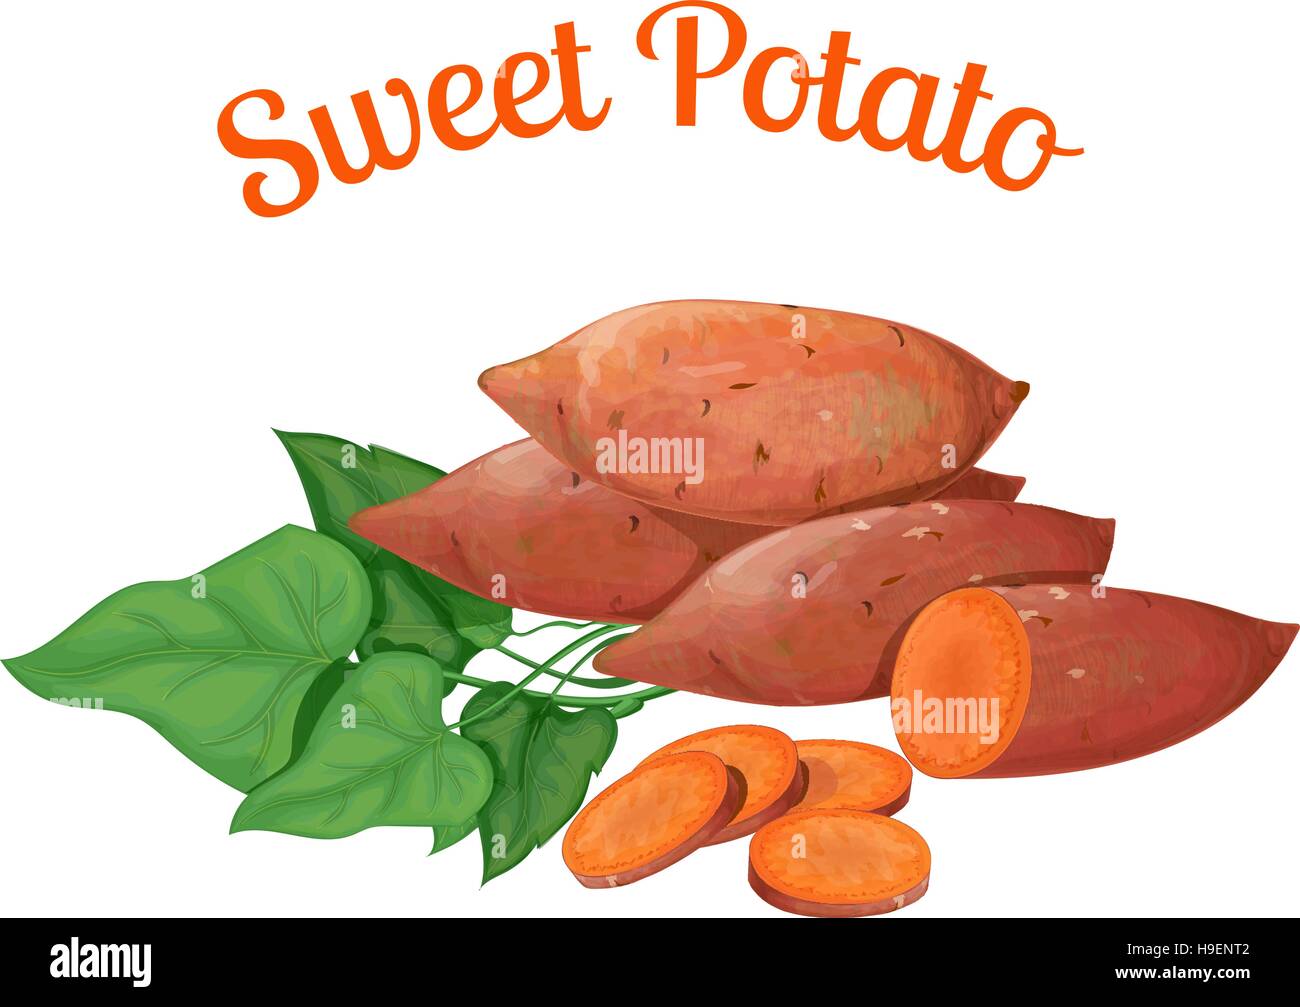 Süßkartoffel. Vektor-Illustration in einem realistischen Stil, auf einem weißen backgrou.nd gemacht Stock Vektor